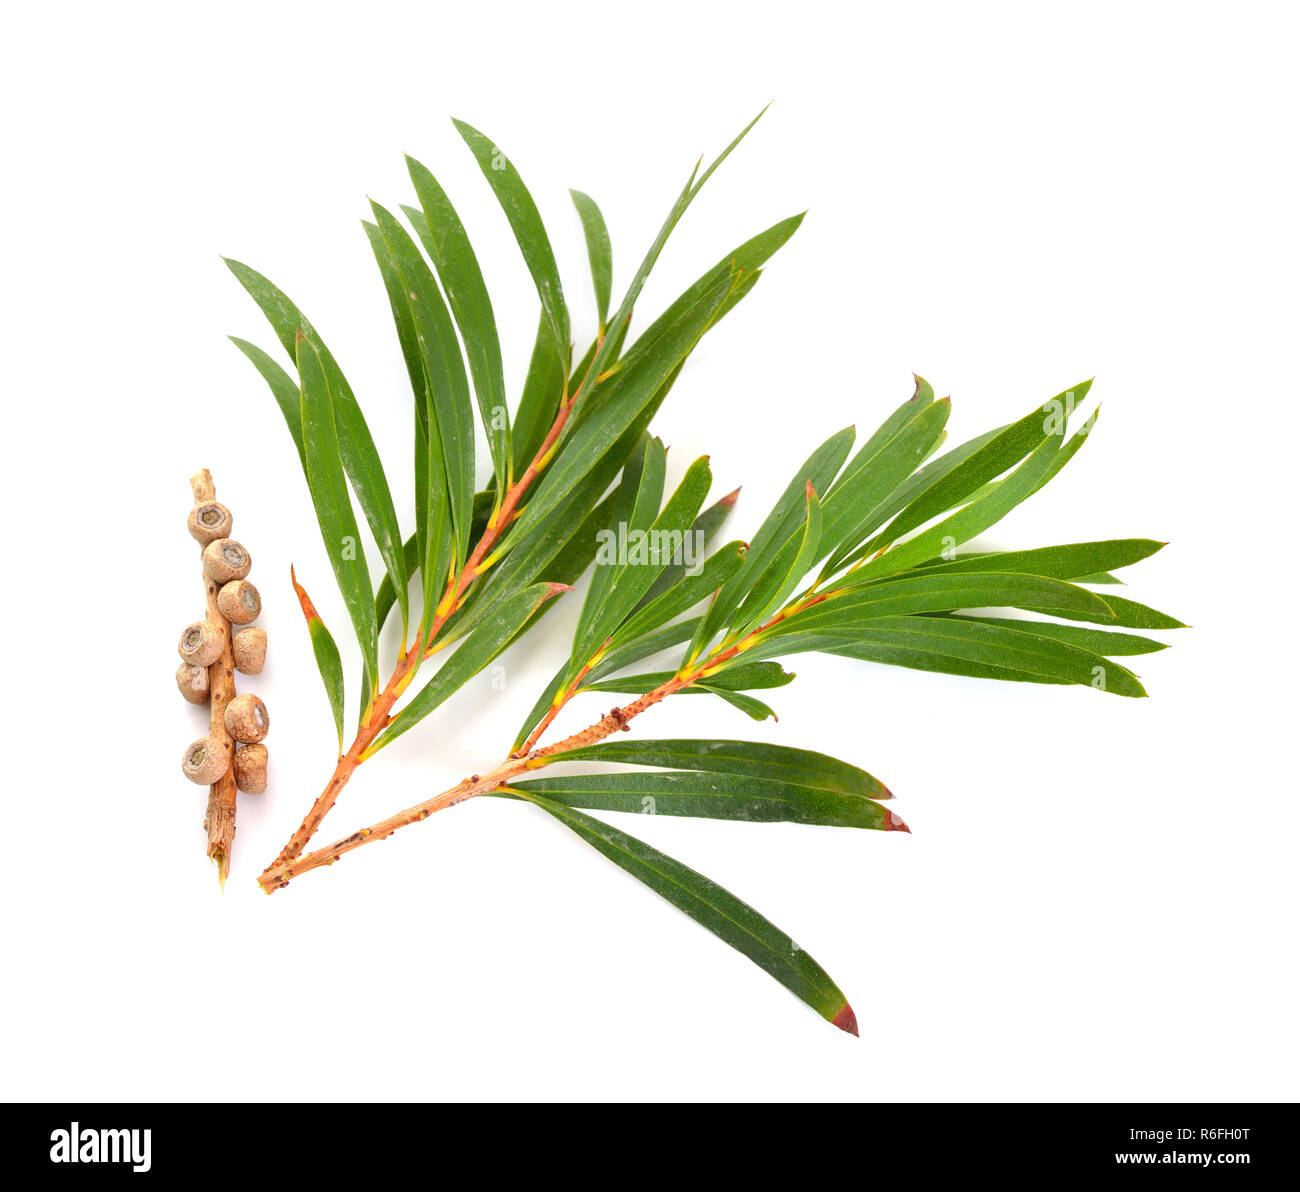 Melaleluca (arbre à thé) les brindilles avec des feuilles et des graines. Isolé sur fond blanc. Banque D'Images